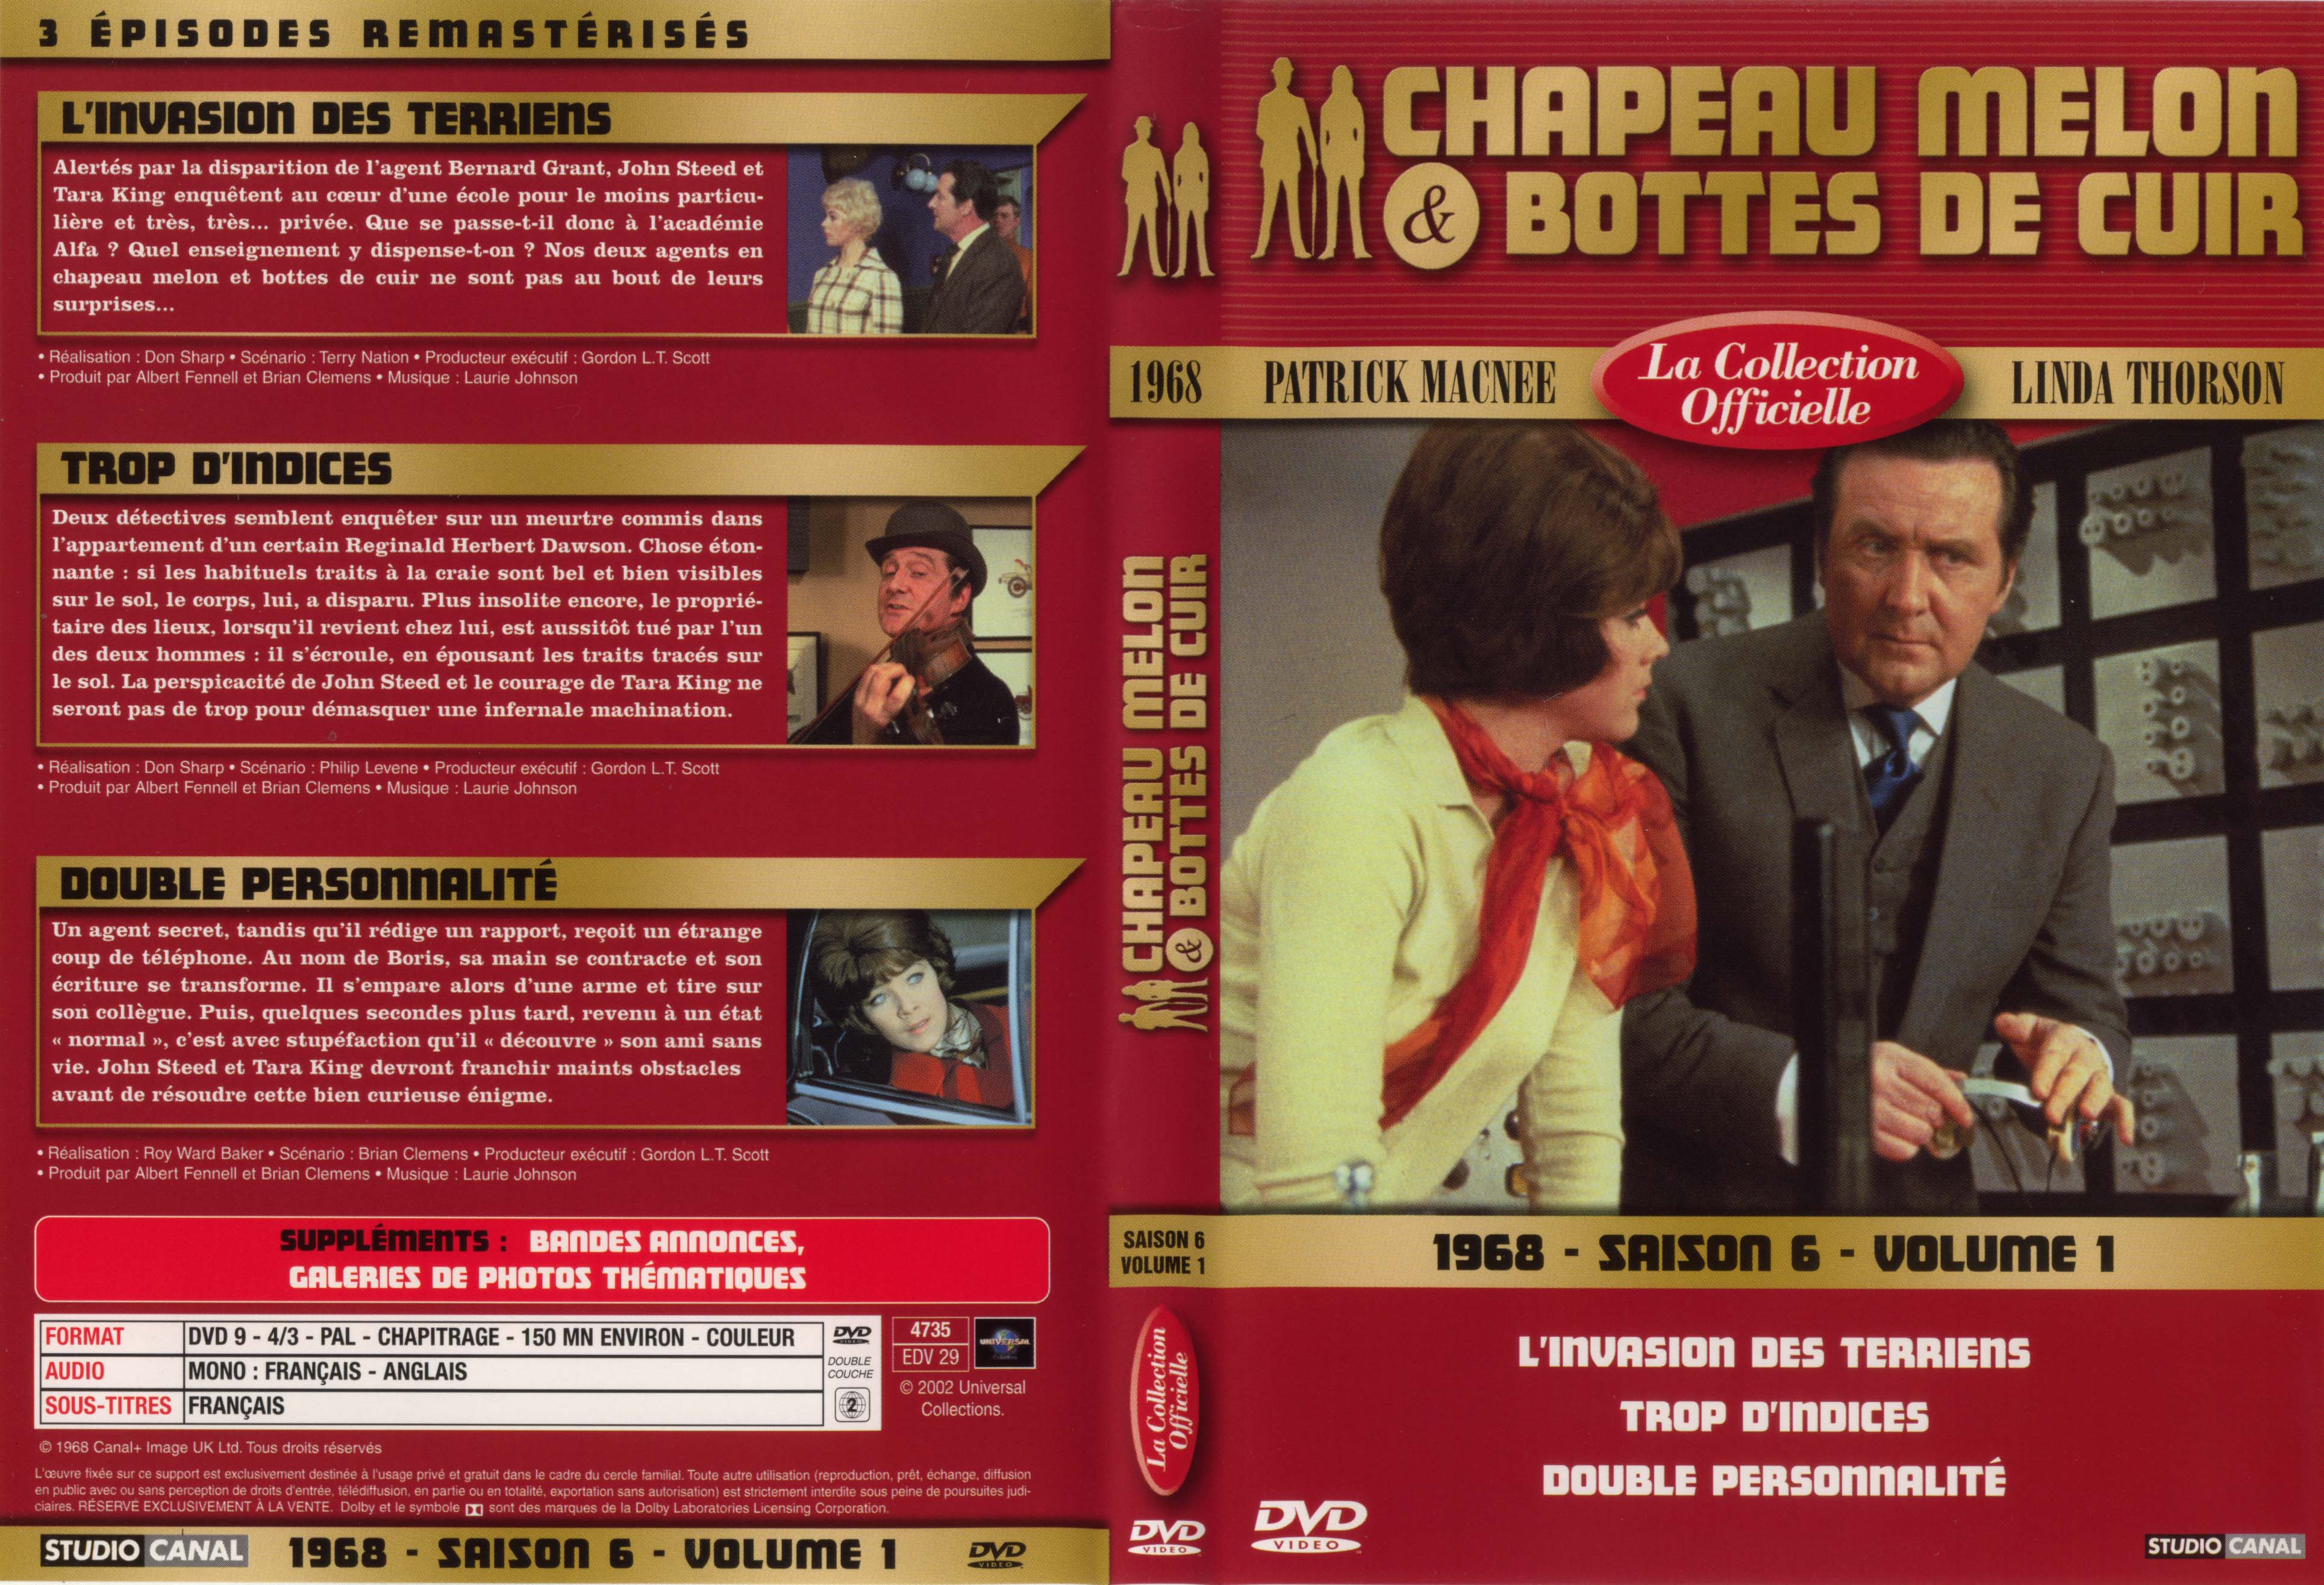 Jaquette DVD Chapeau melon et bottes de cuir 1968 saison 6 vol 1